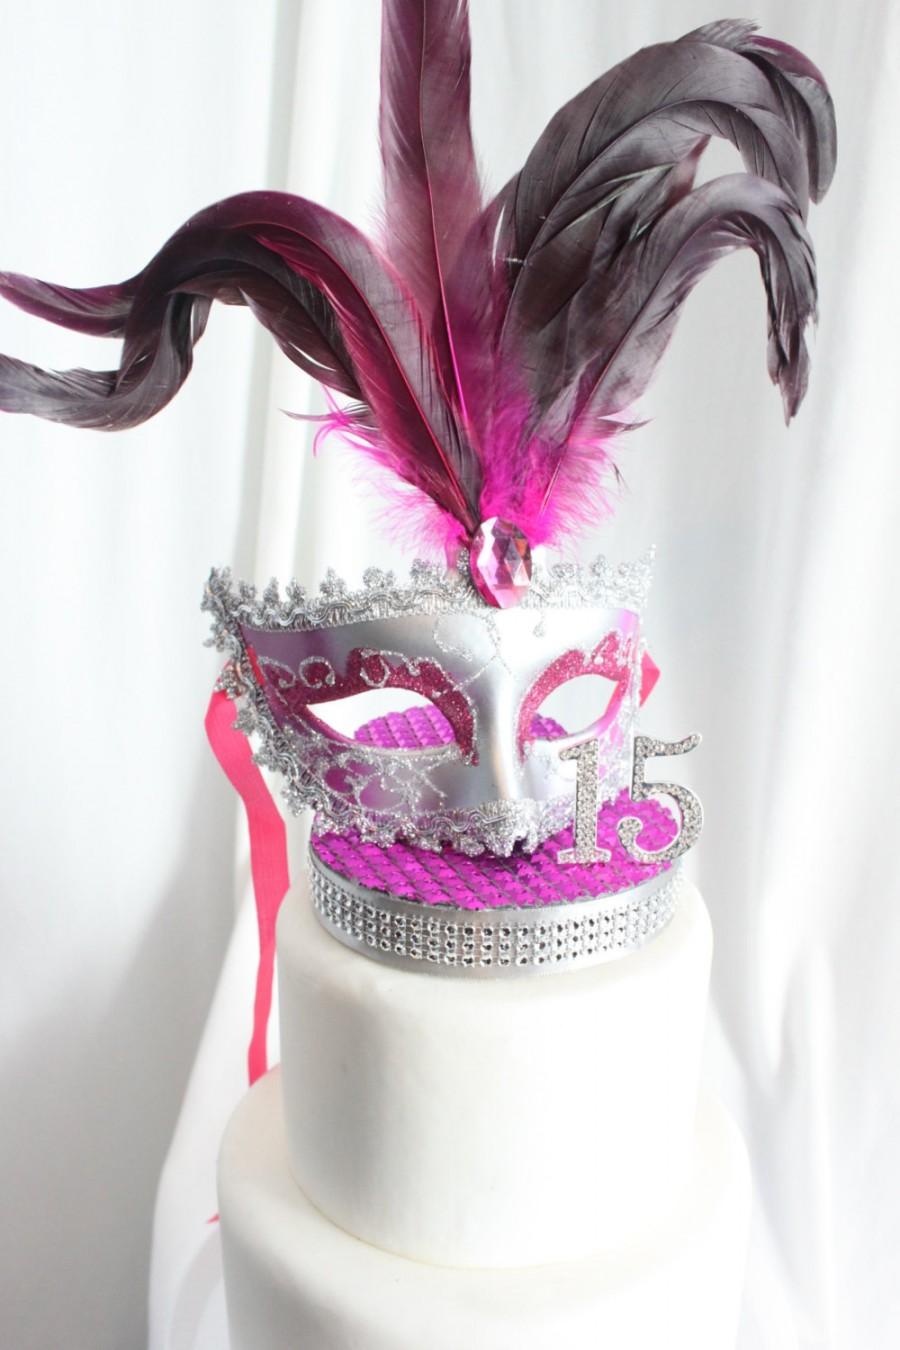 زفاف - Masquerade, Mask, Rhinestone Sweet 16 Cake Topper Hot Pink and Silver, overthetopcaketopper